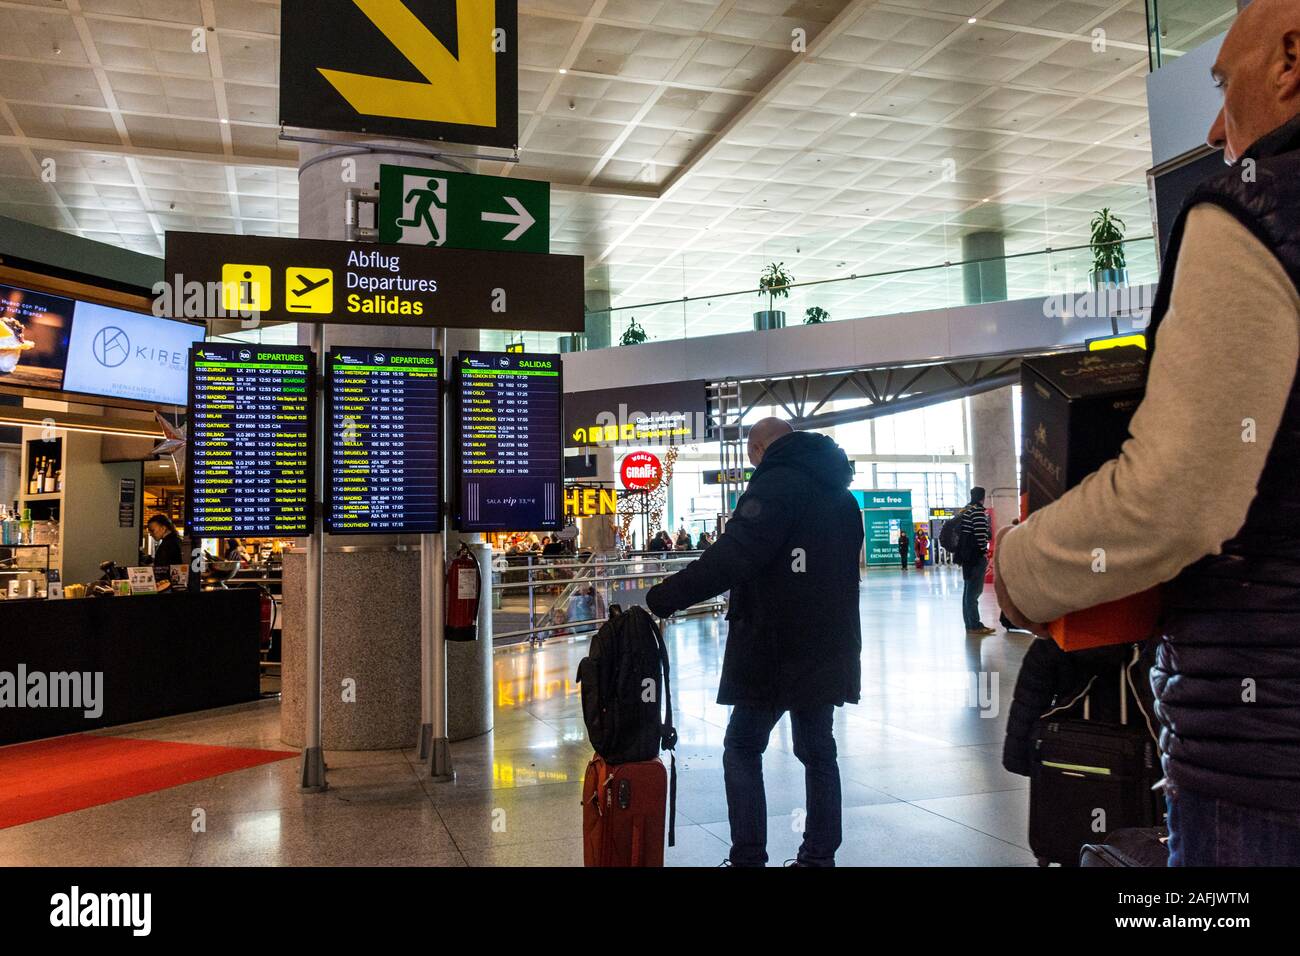 Fahrgäste im Abflugbereich am Flughafen von Malaga, Spanien. Stockfoto